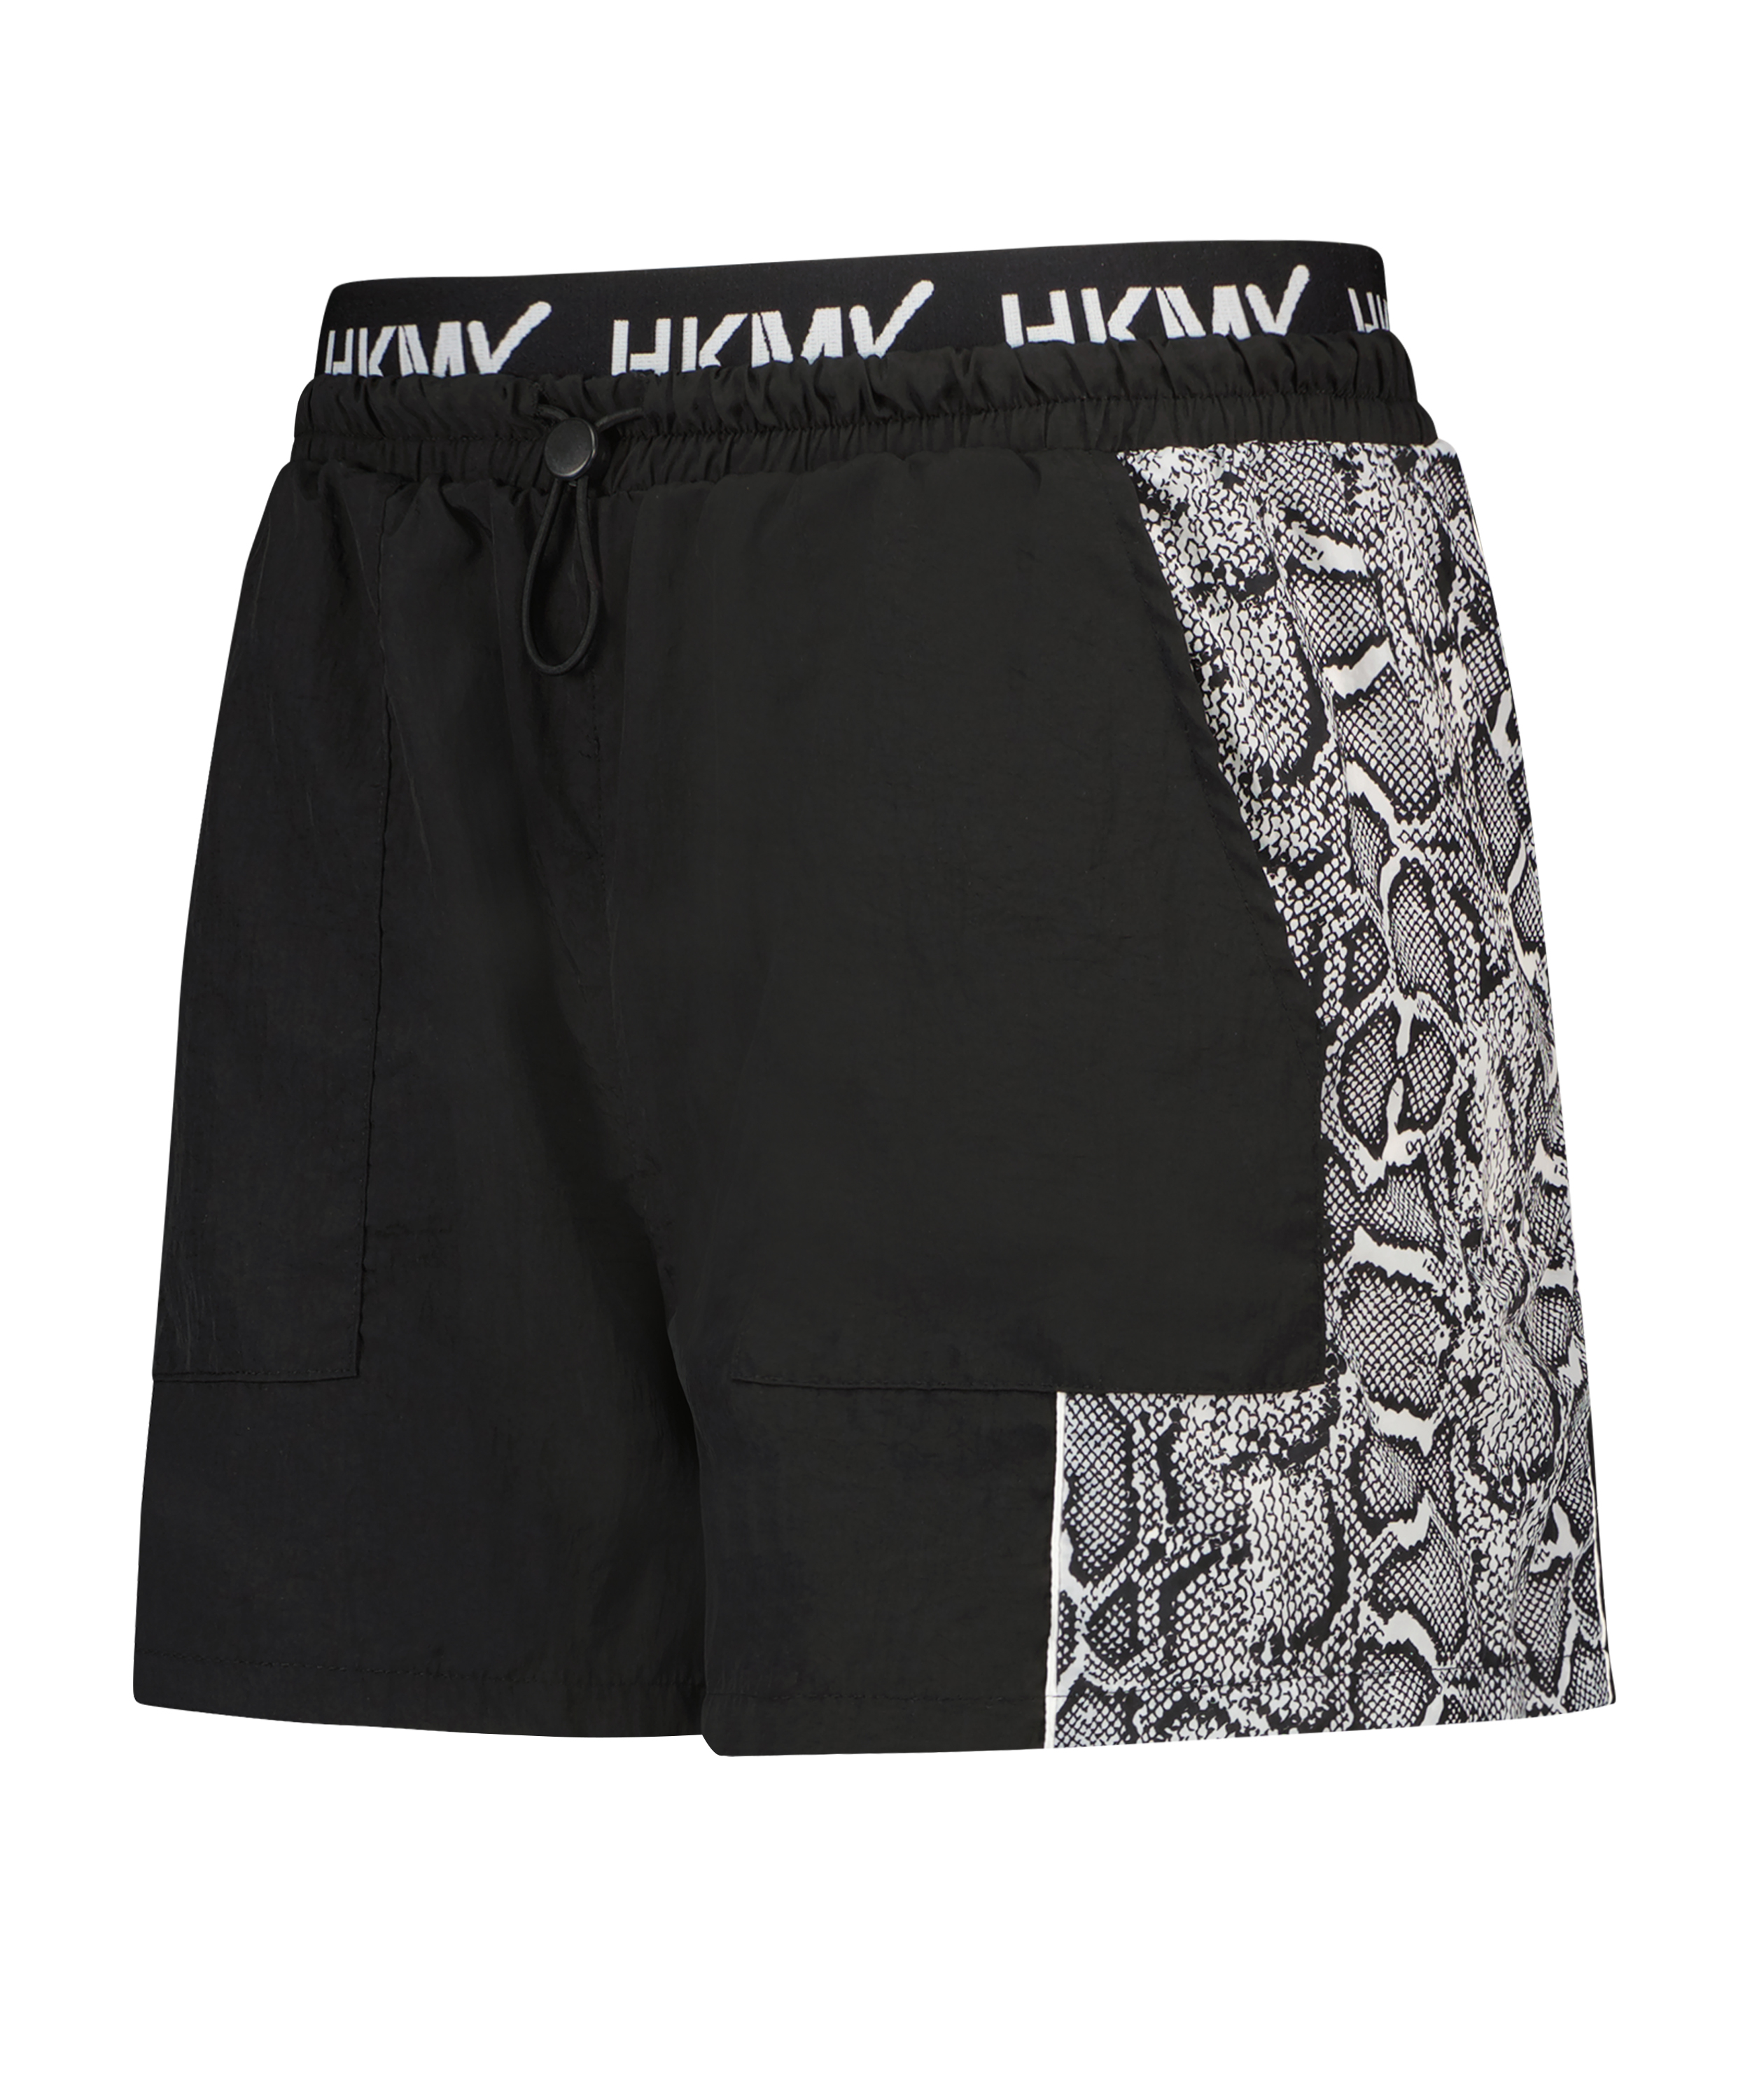 HKMX sport shorts, Black, main